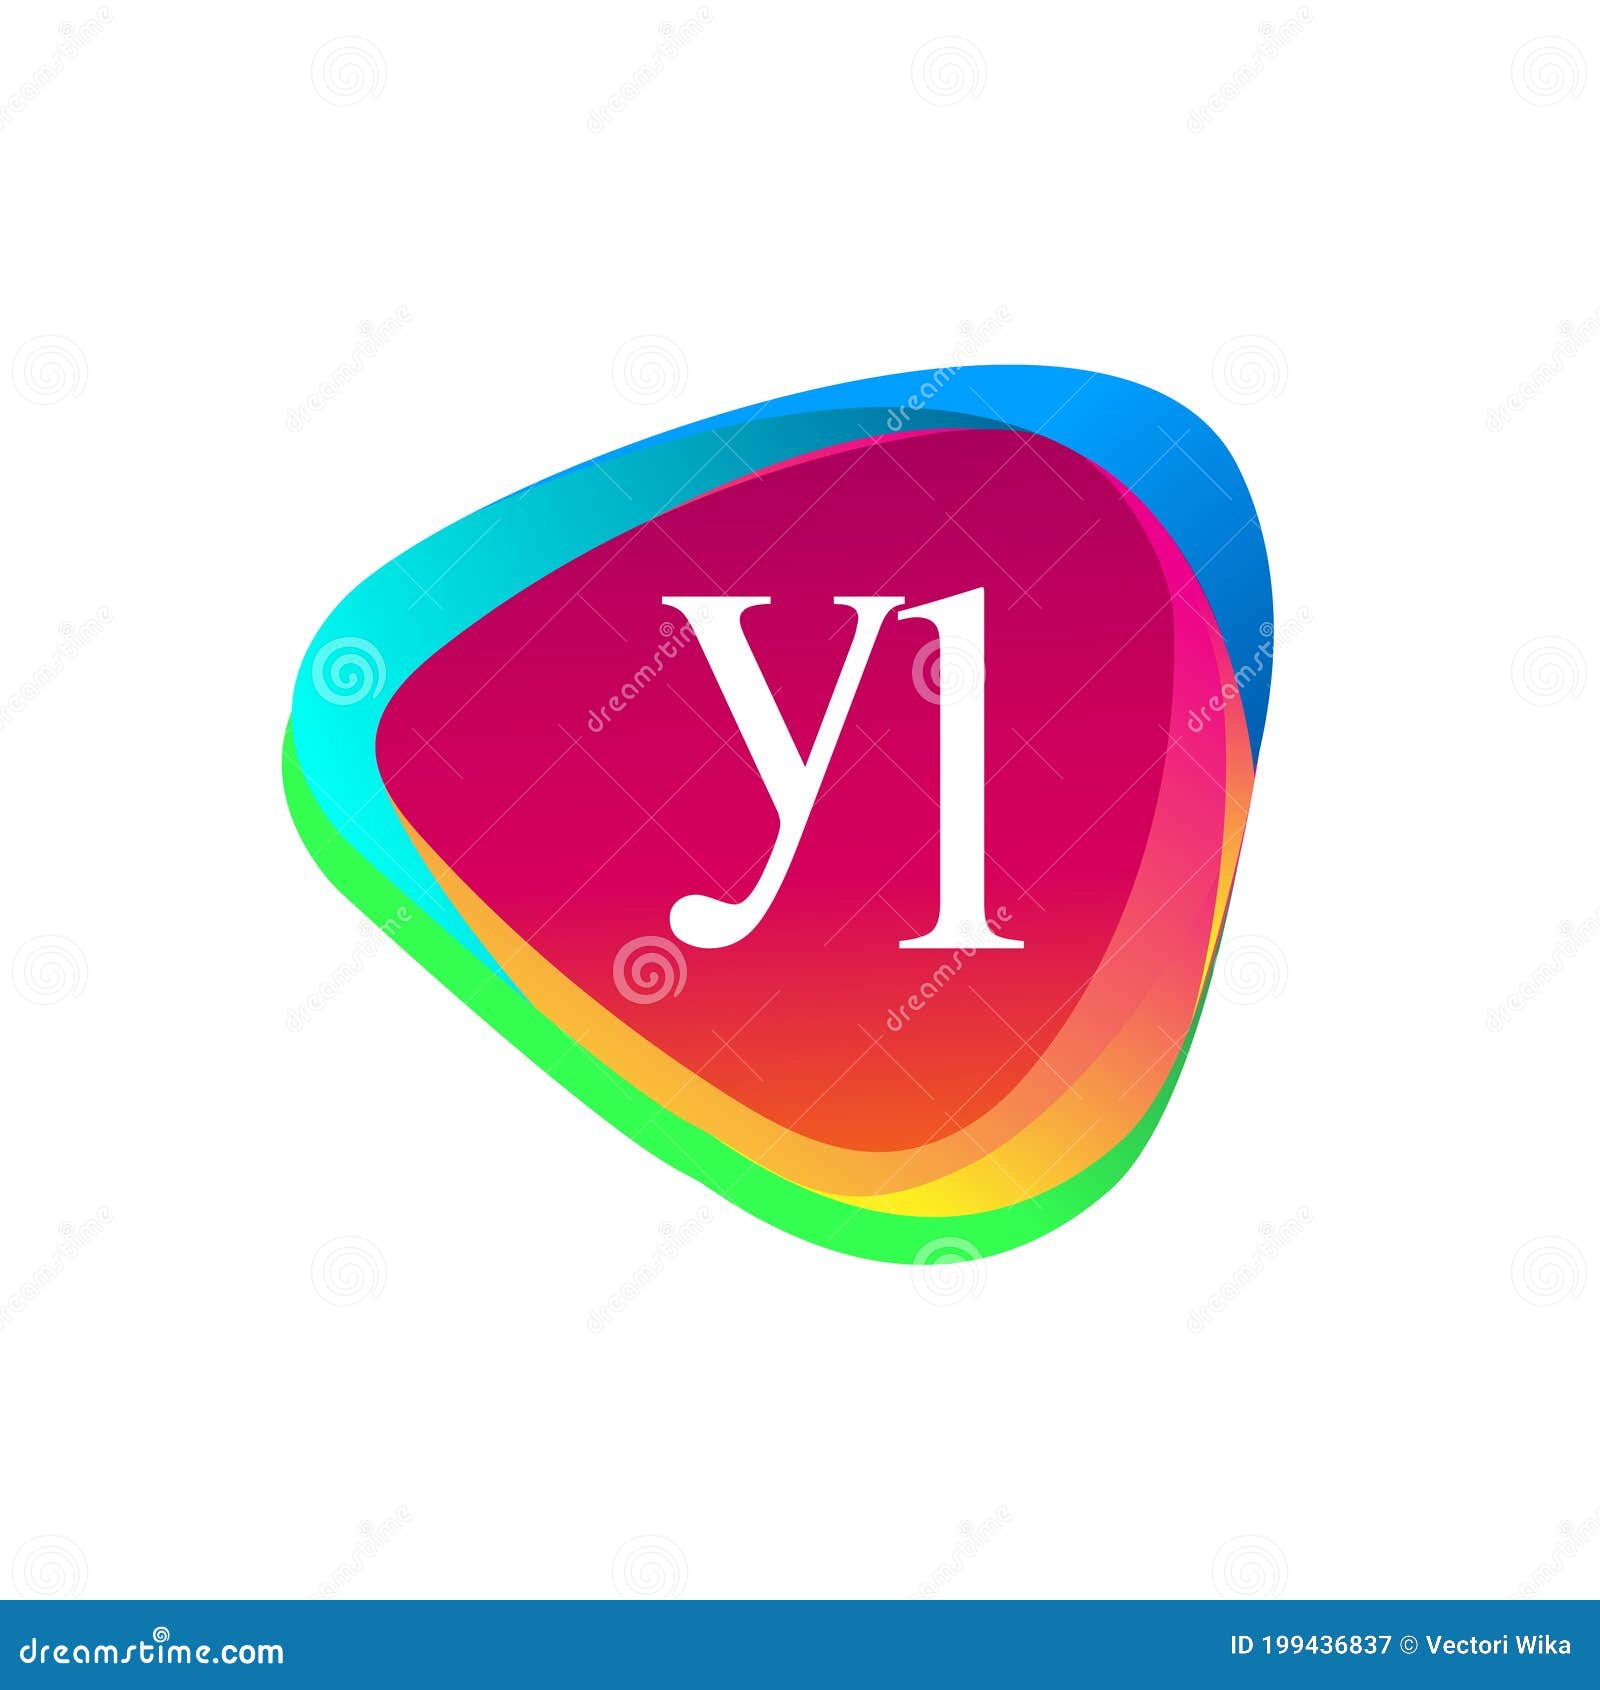 letter yl logo